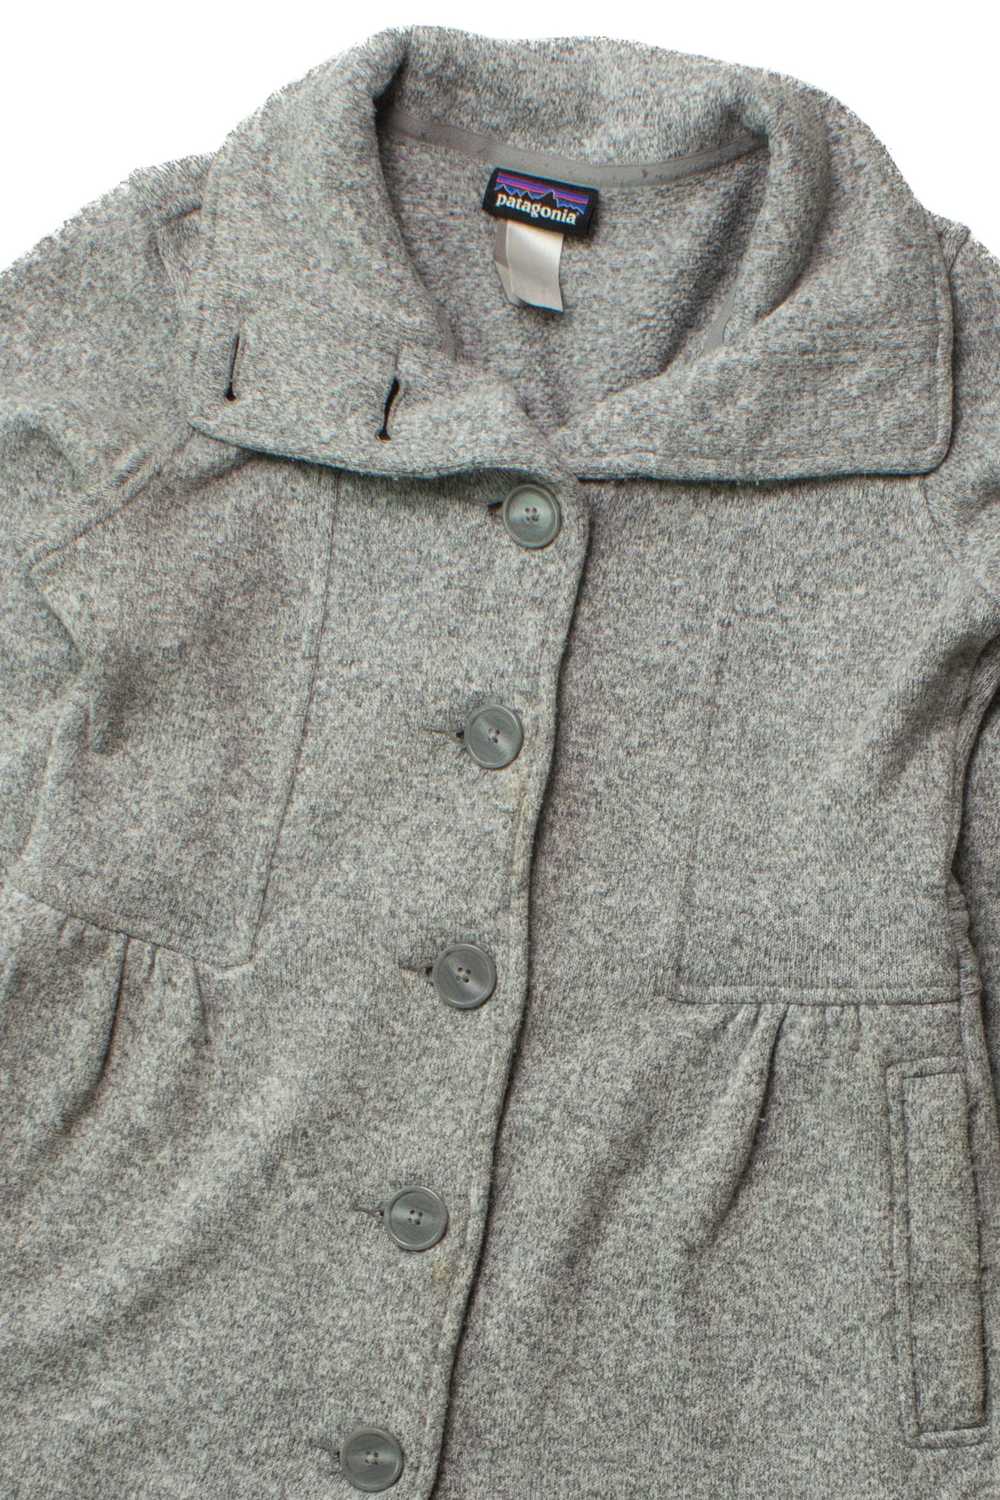 Gray Patagonia Coat (2000s) - image 2